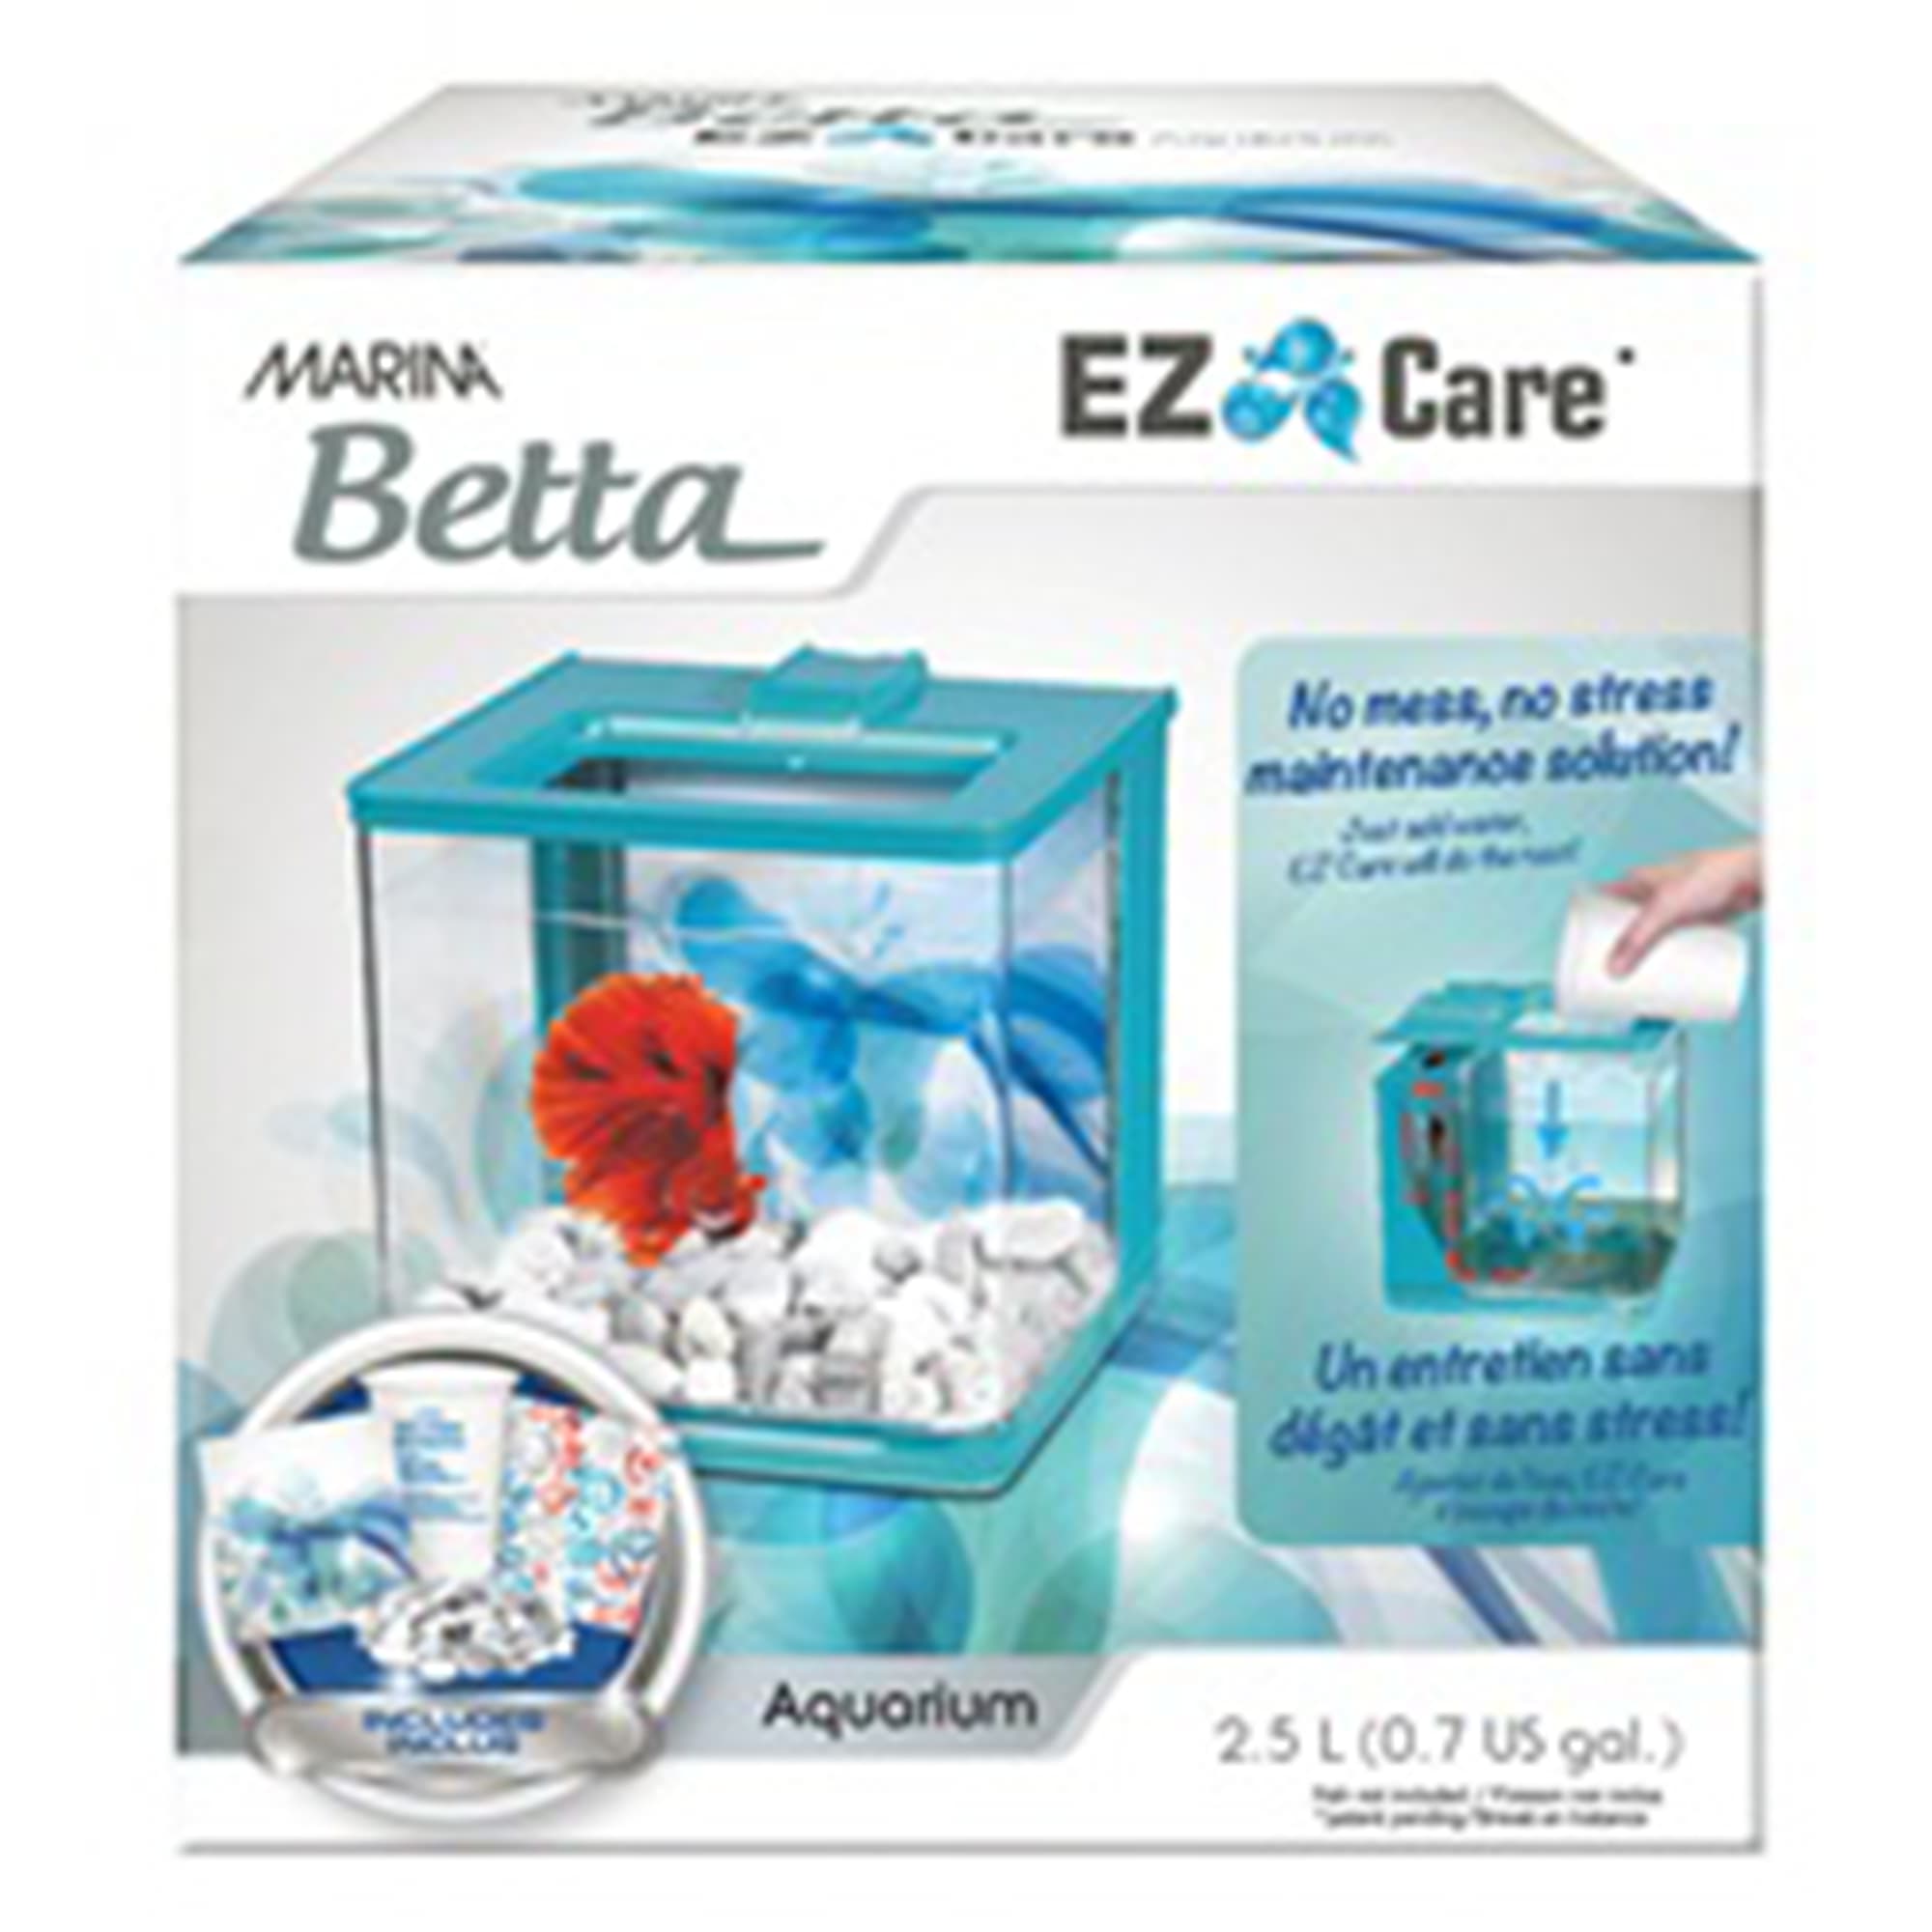 Bugsering Madison løfte Marina Blue Betta Aquarium EZ Care Plus Kit, 1.35 Gallon | Petco